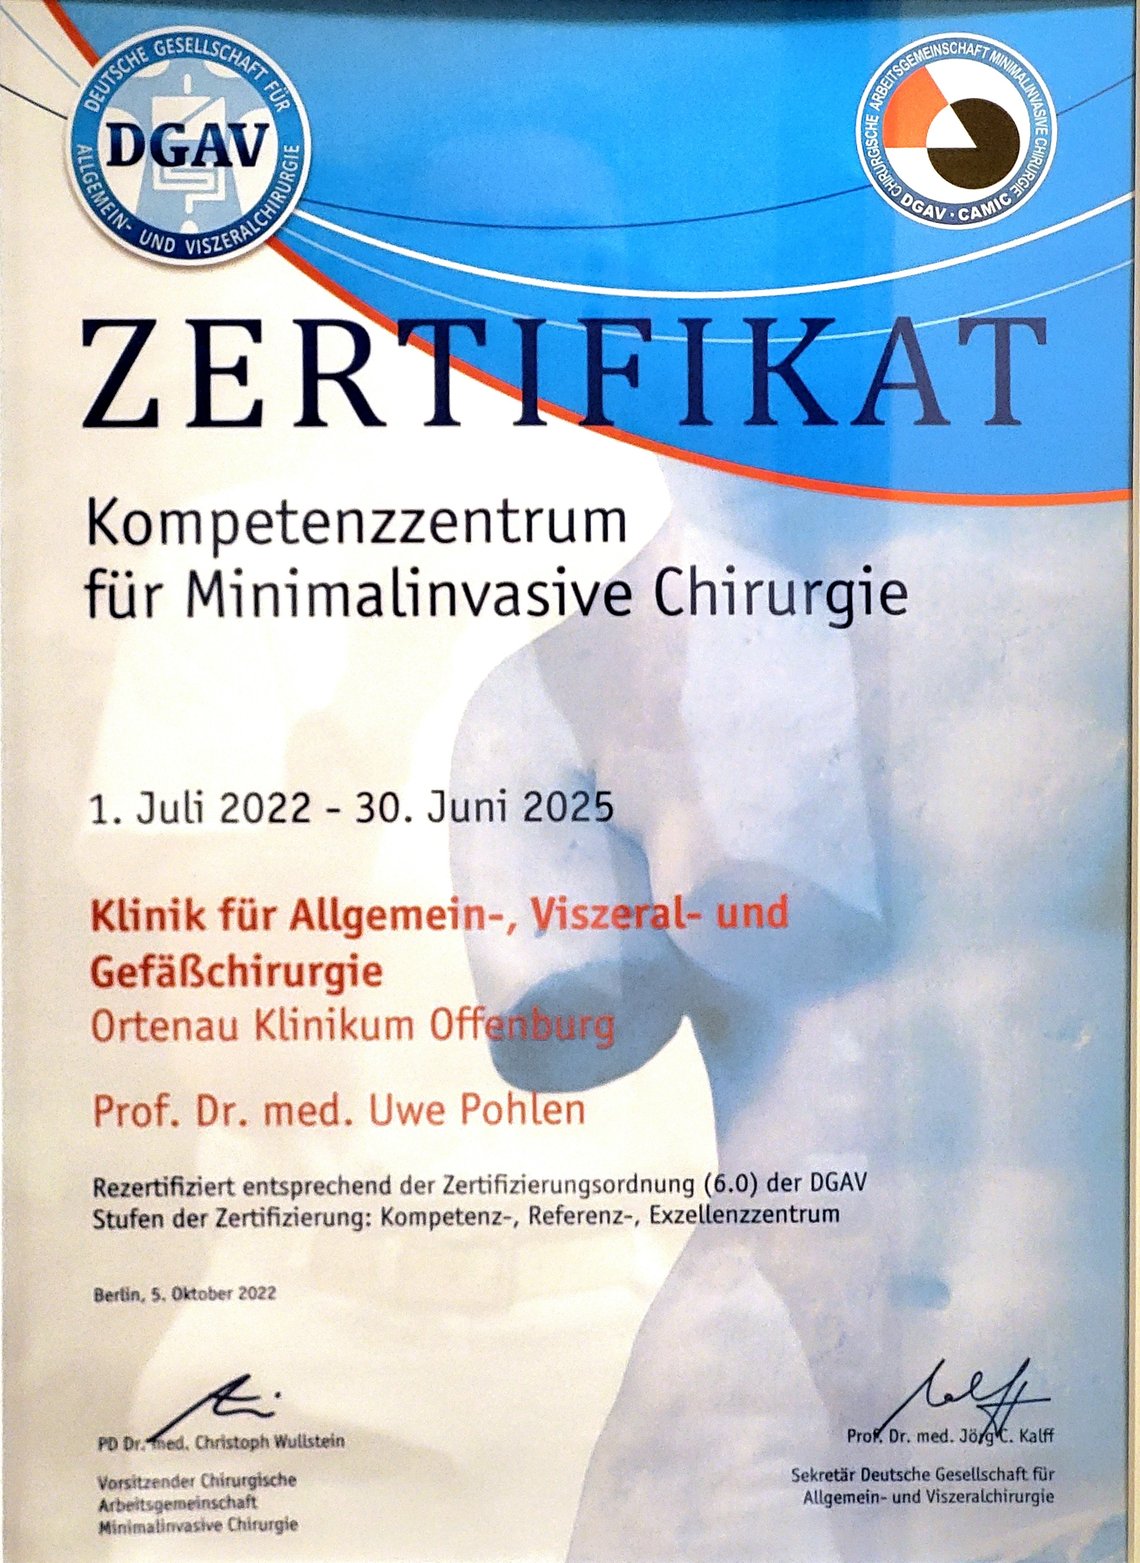 Zertifikat: Kompetenzzentrum für Minimalinvasive Chirurgie